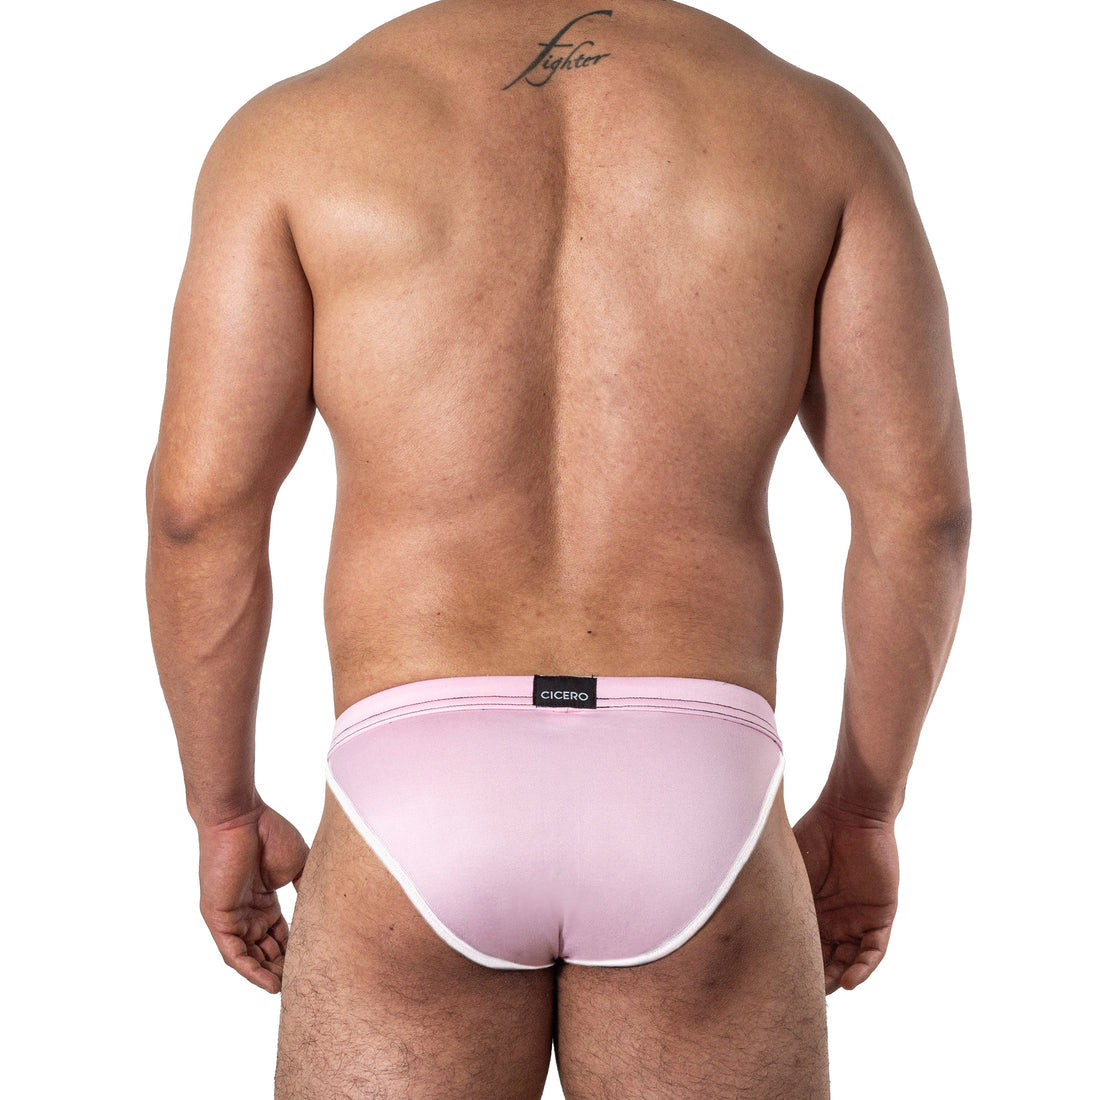 SB0043 Brief bikini rosa claro skinit